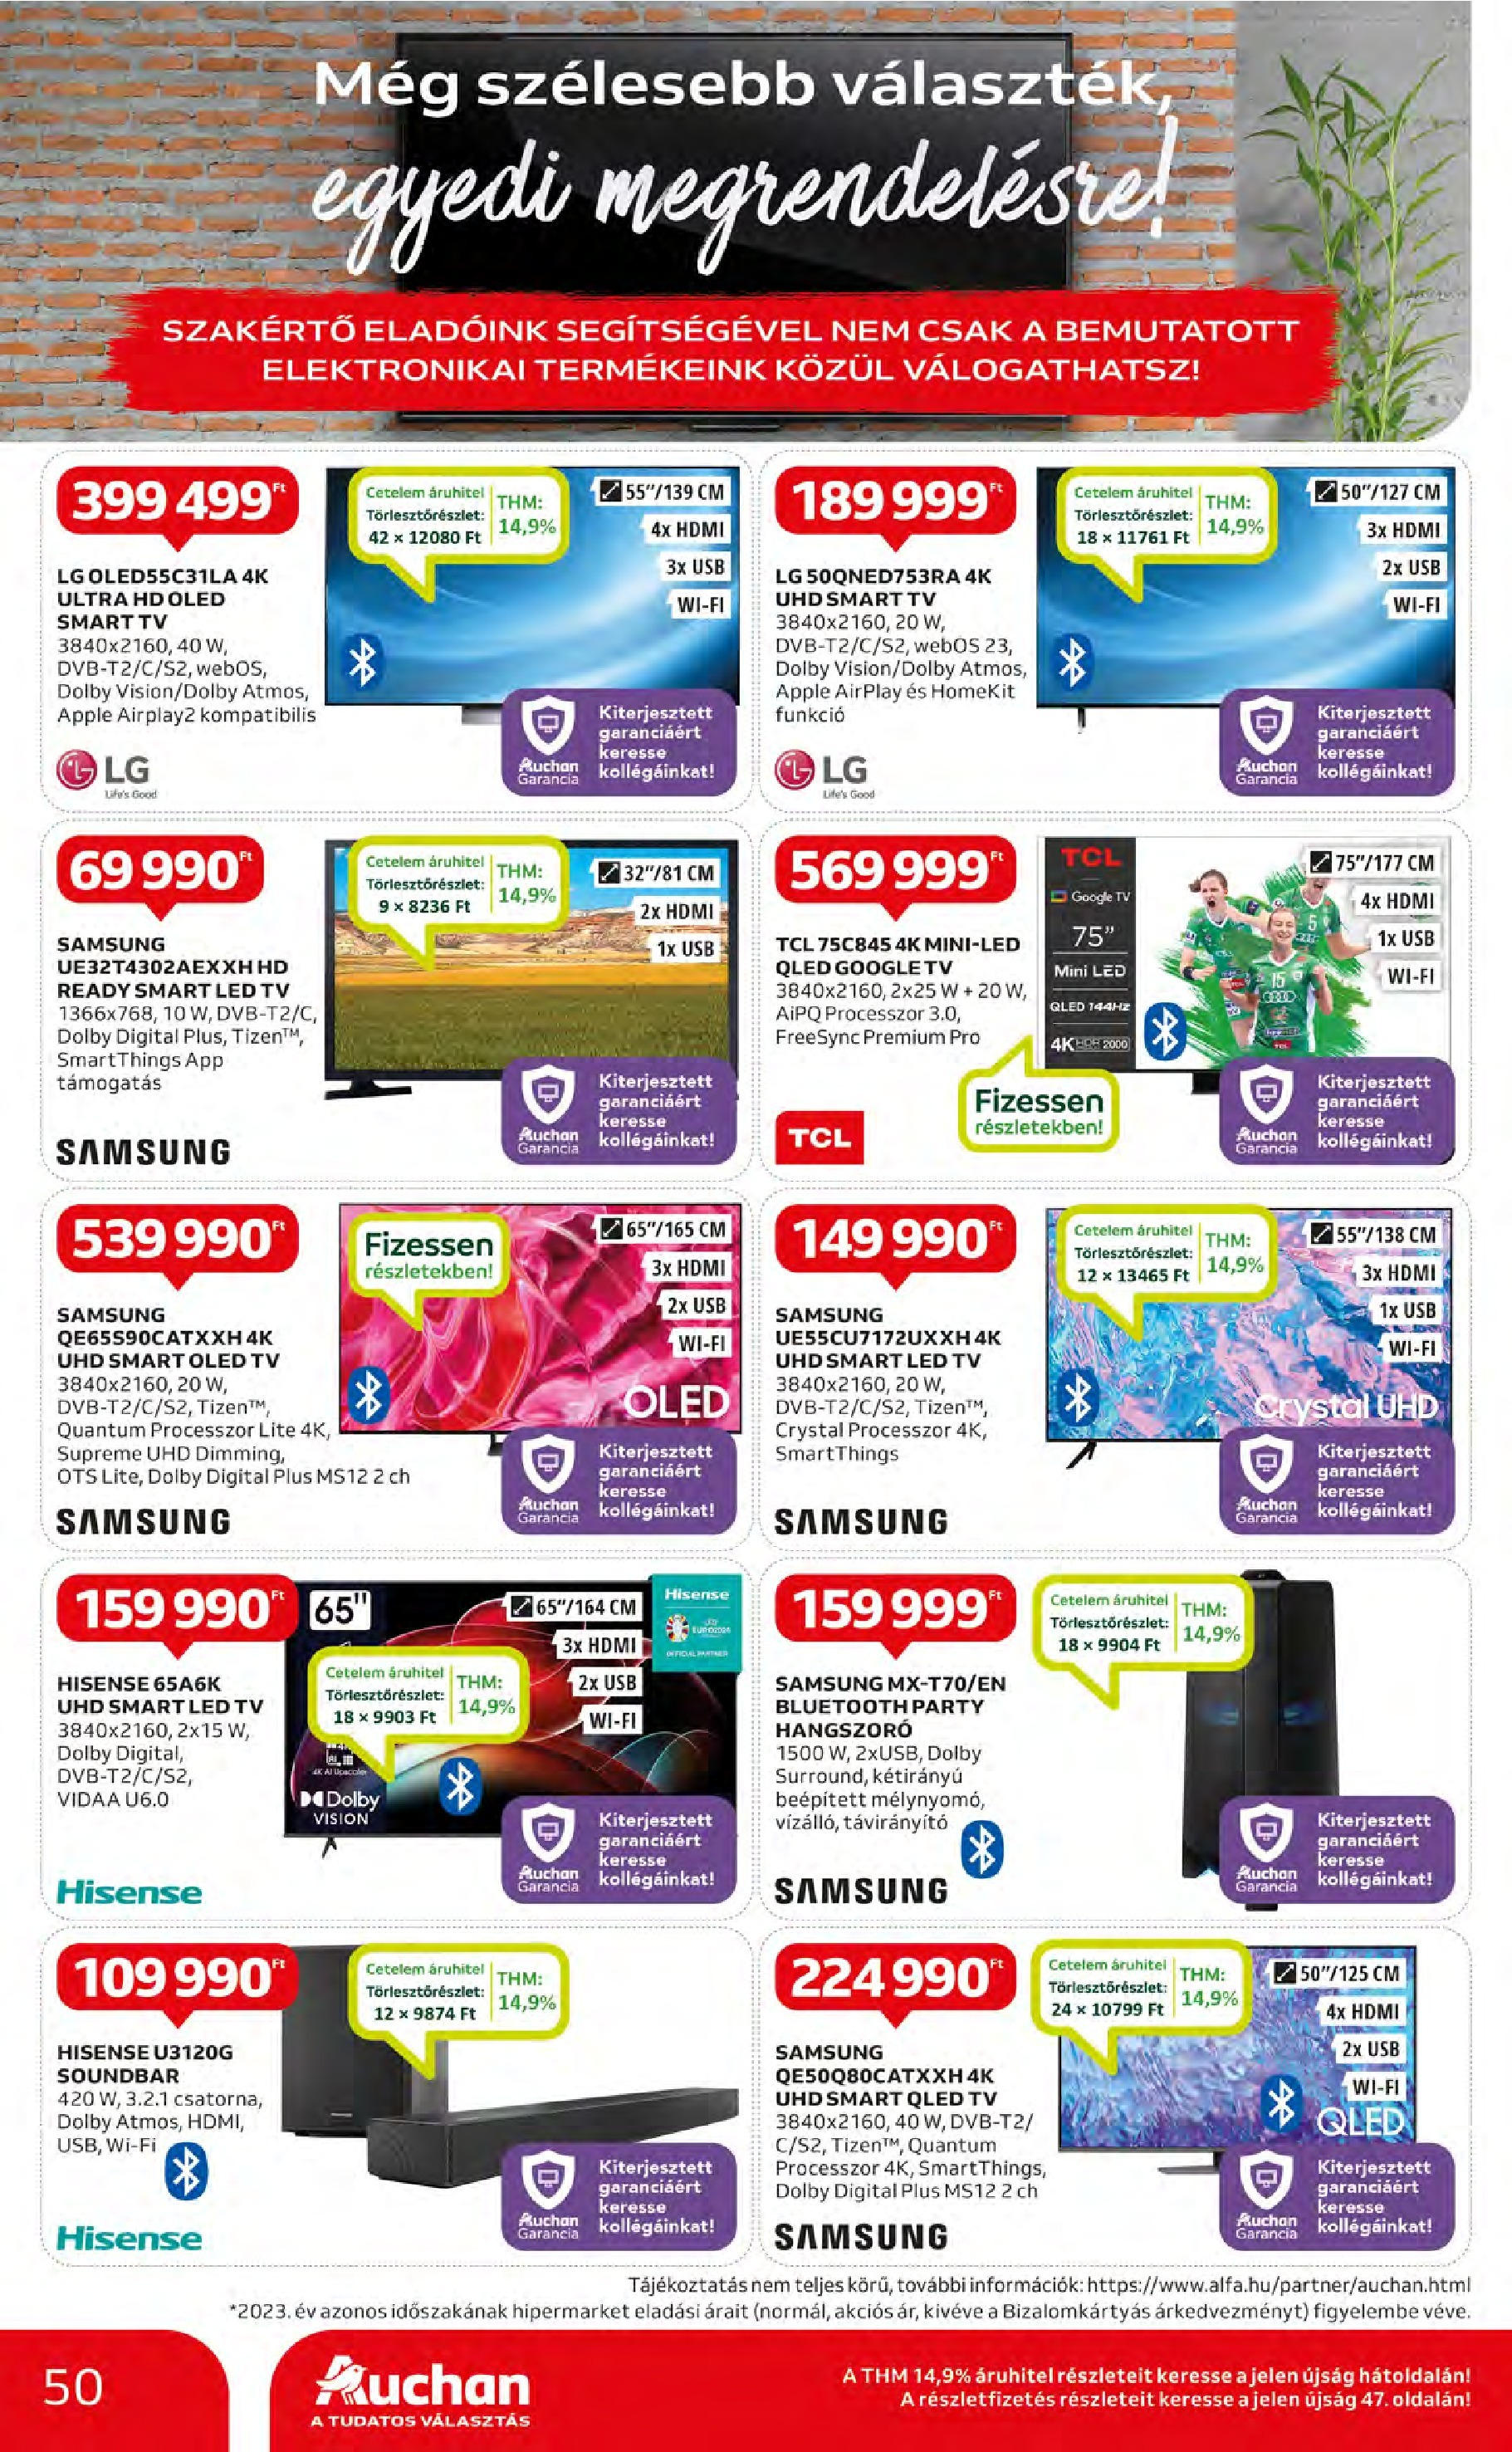 Auchan  Akciós újság - 2024.05.09. -tól/töl > akció, szórólap 🛍️ | Oldal: 50 | Termékek: Távirányító, USB, Smart tv, Soundbar